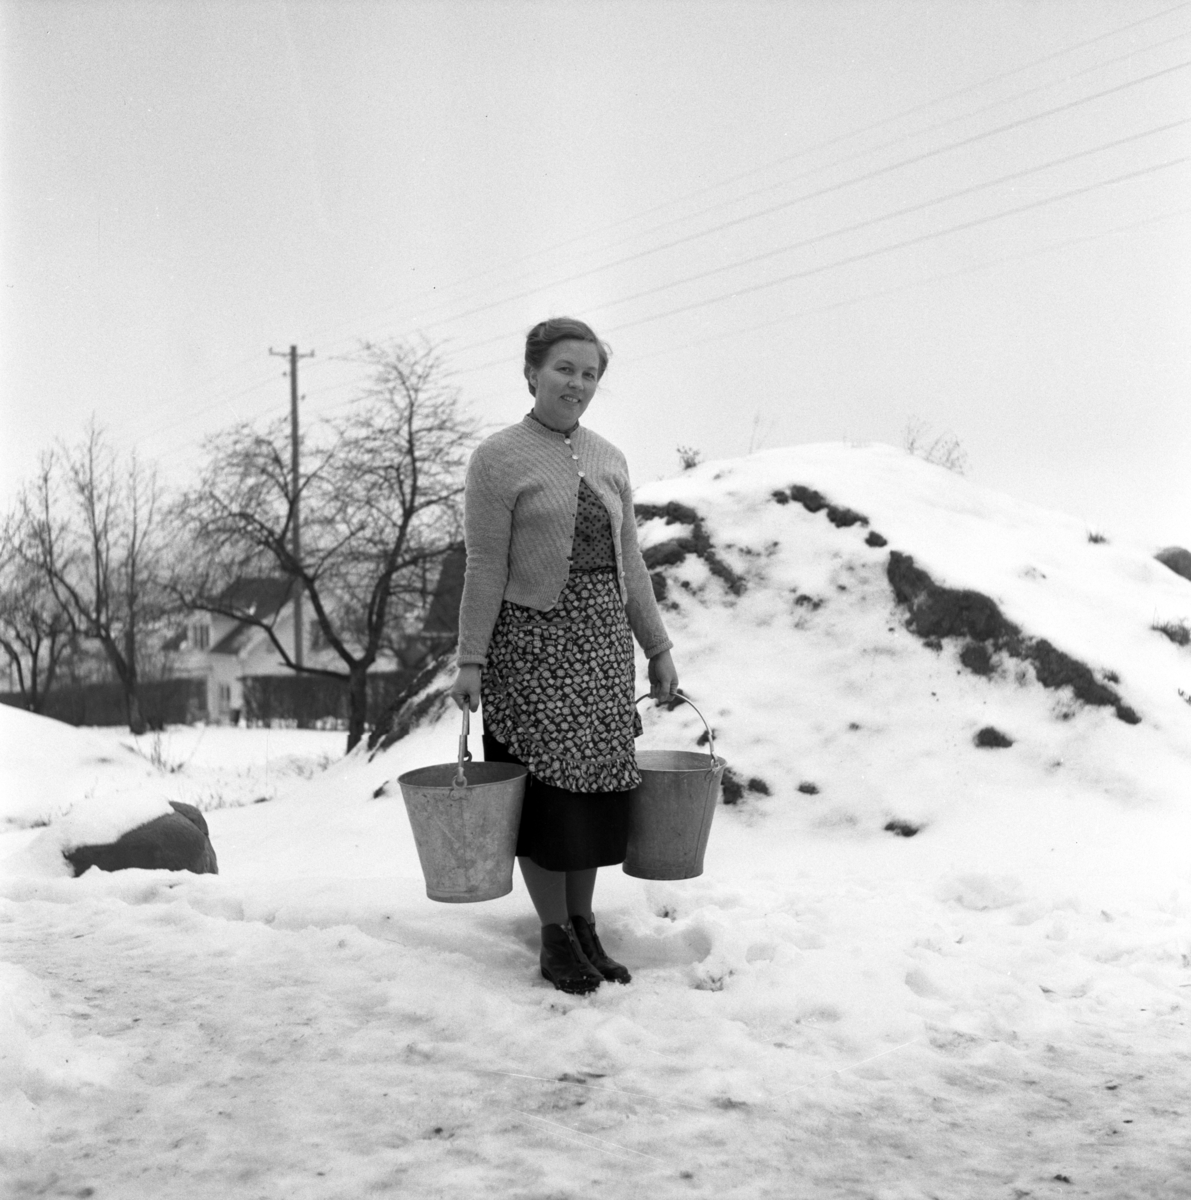 Fru Iris Gustavsson bodde med sin familj på Egna hem i Huskvarna. Att hämta vatten var en daglig syssla för många huskvarnabor ännu på 1950-talet.